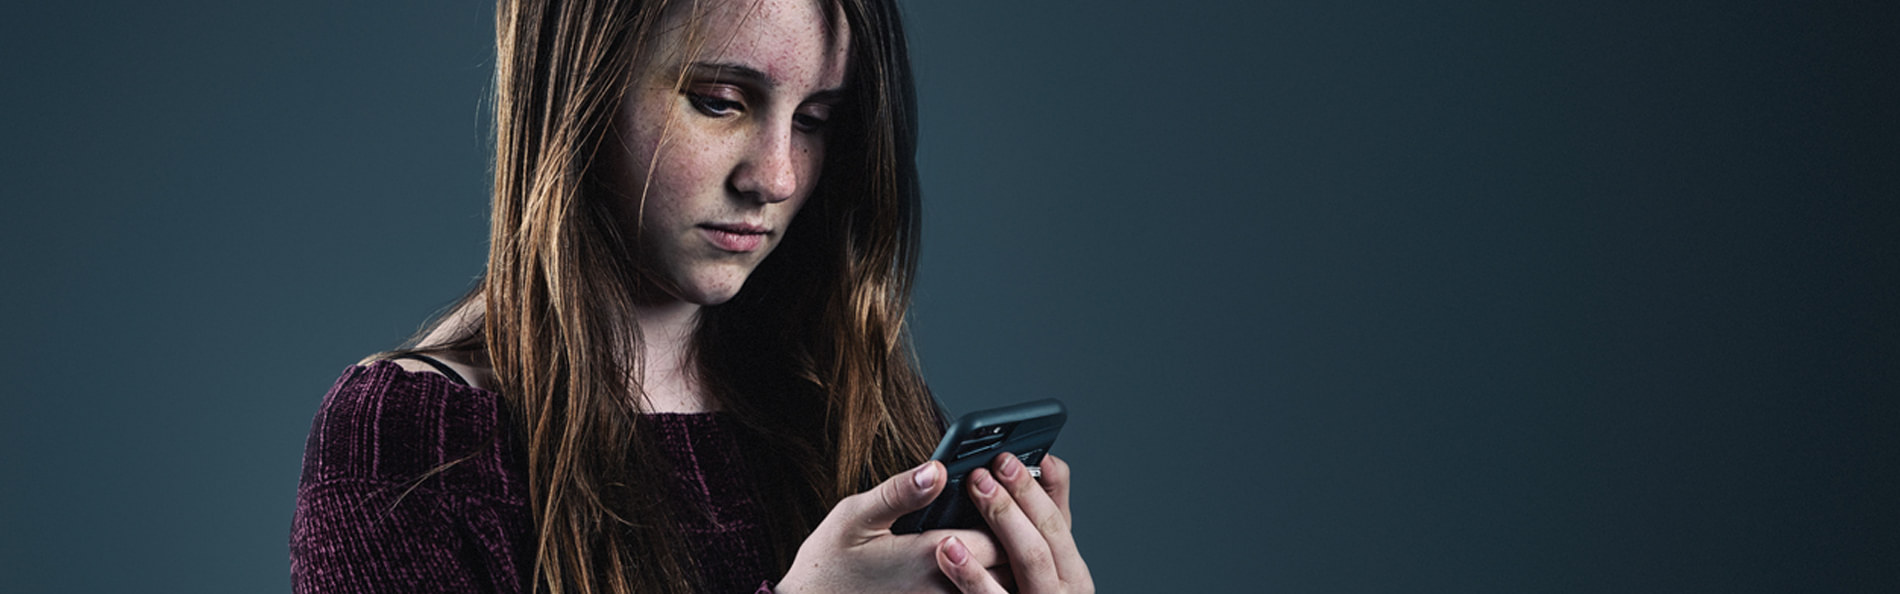 Junges Mädchen schaut mit resigniertem Gesichtsausdruck auf ein Smartphone